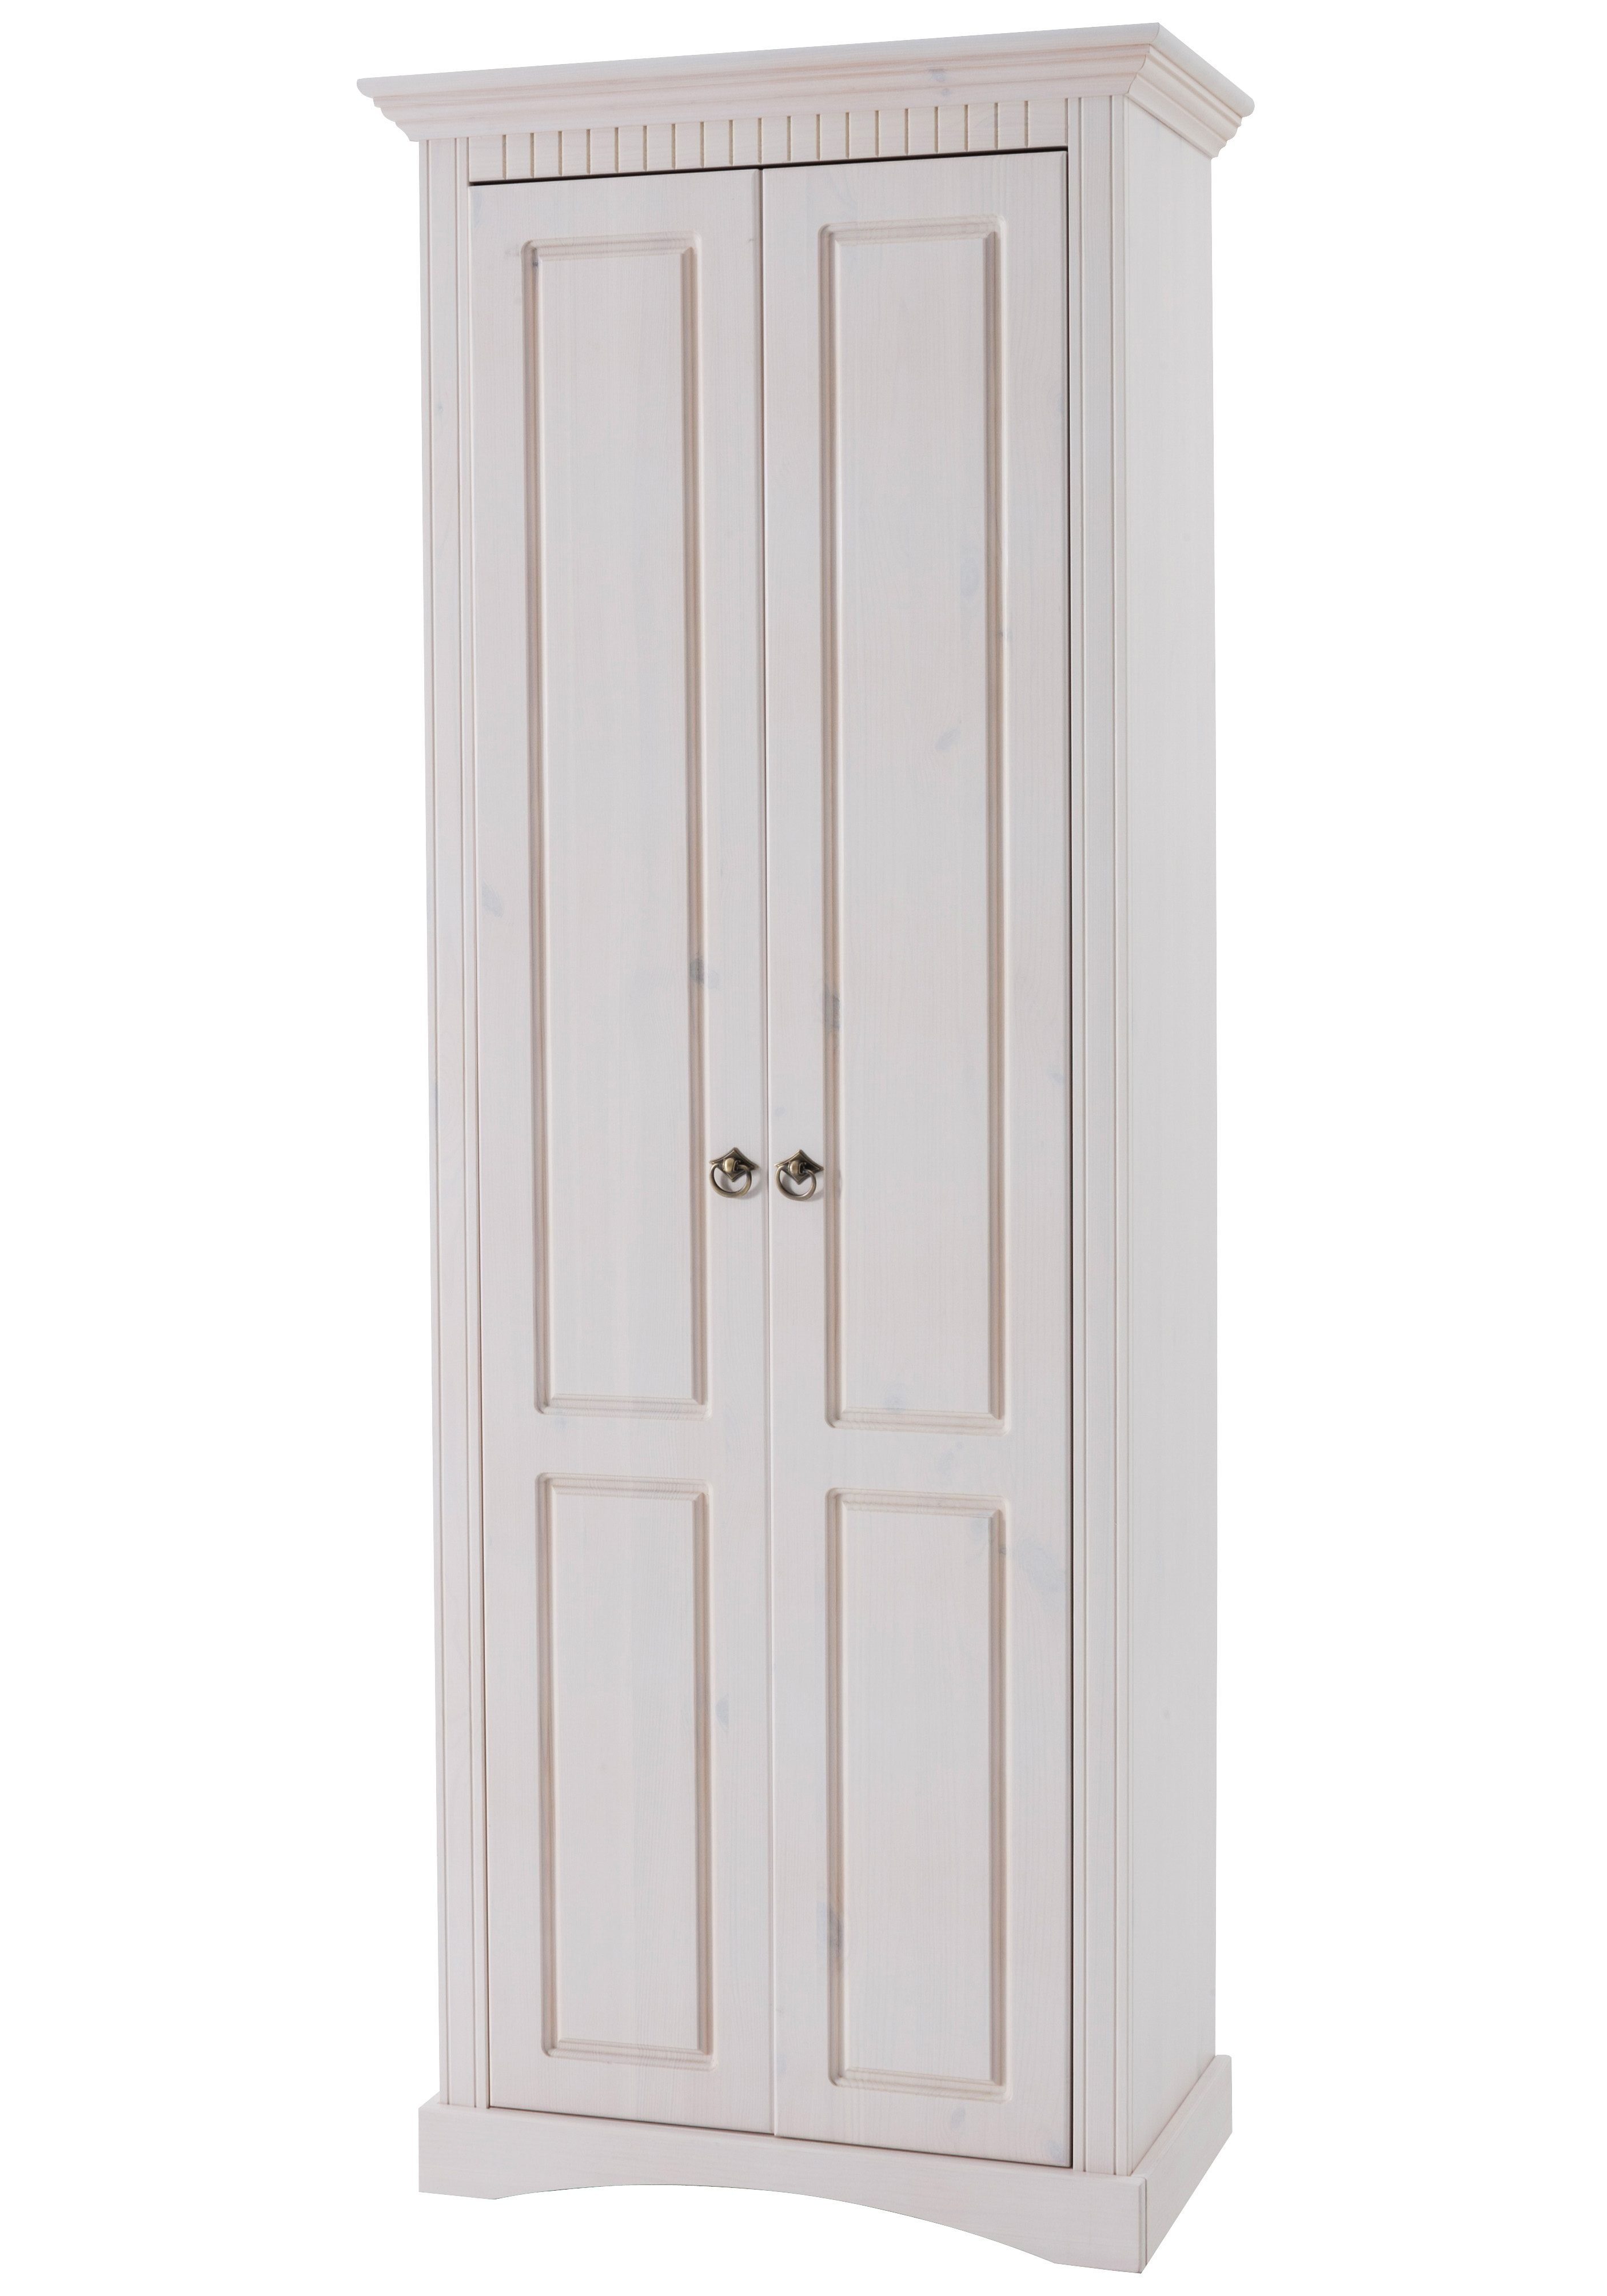 Home affaire Garderobenschrank Rustic aus massiver Kiefer, Breite 71 cm, mit Kassetenoptik weiß